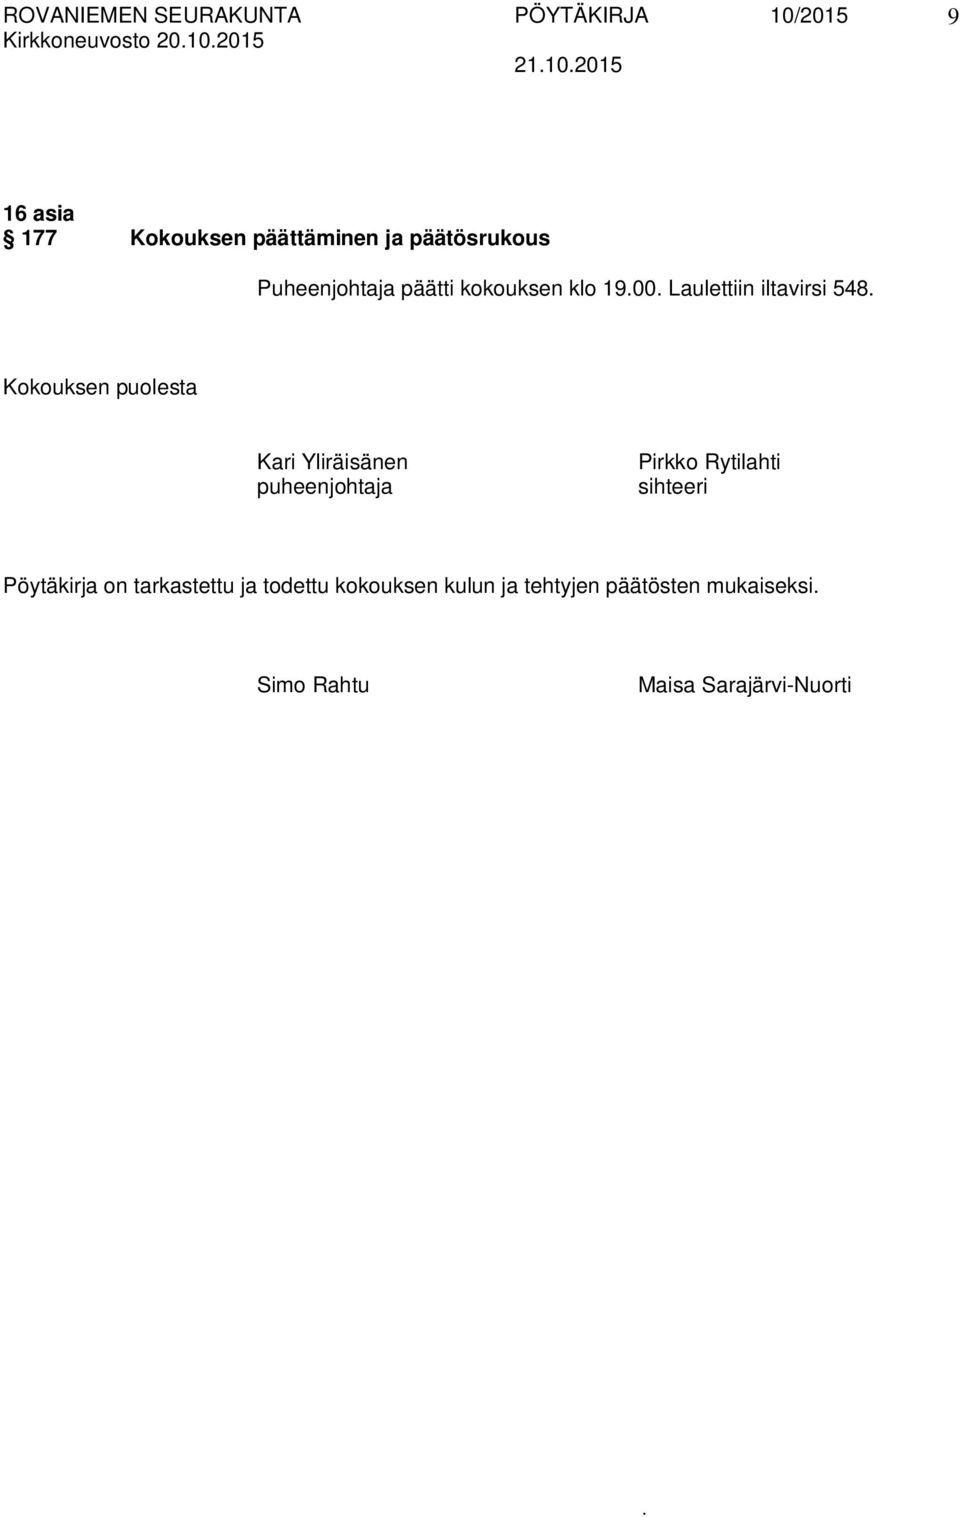 Kari Yliräisänen puheenjohtaja Pirkko Rytilahti sihteeri Pöytäkirja on tarkastettu ja